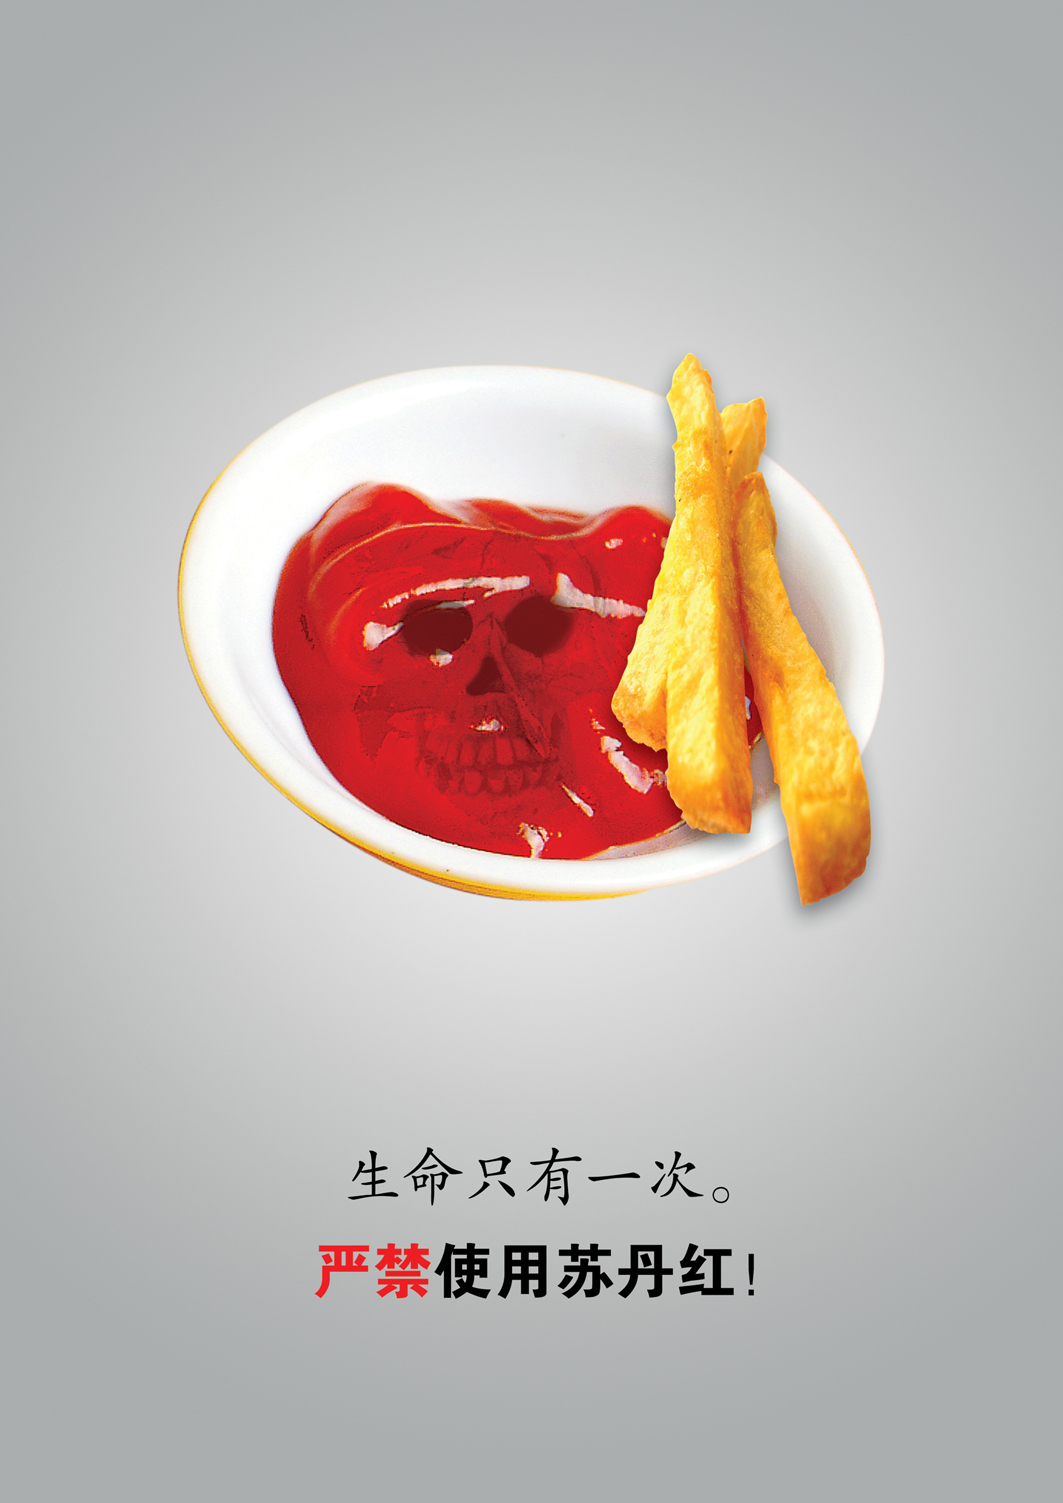 食品安全系列——薯条篇RGB.jpg